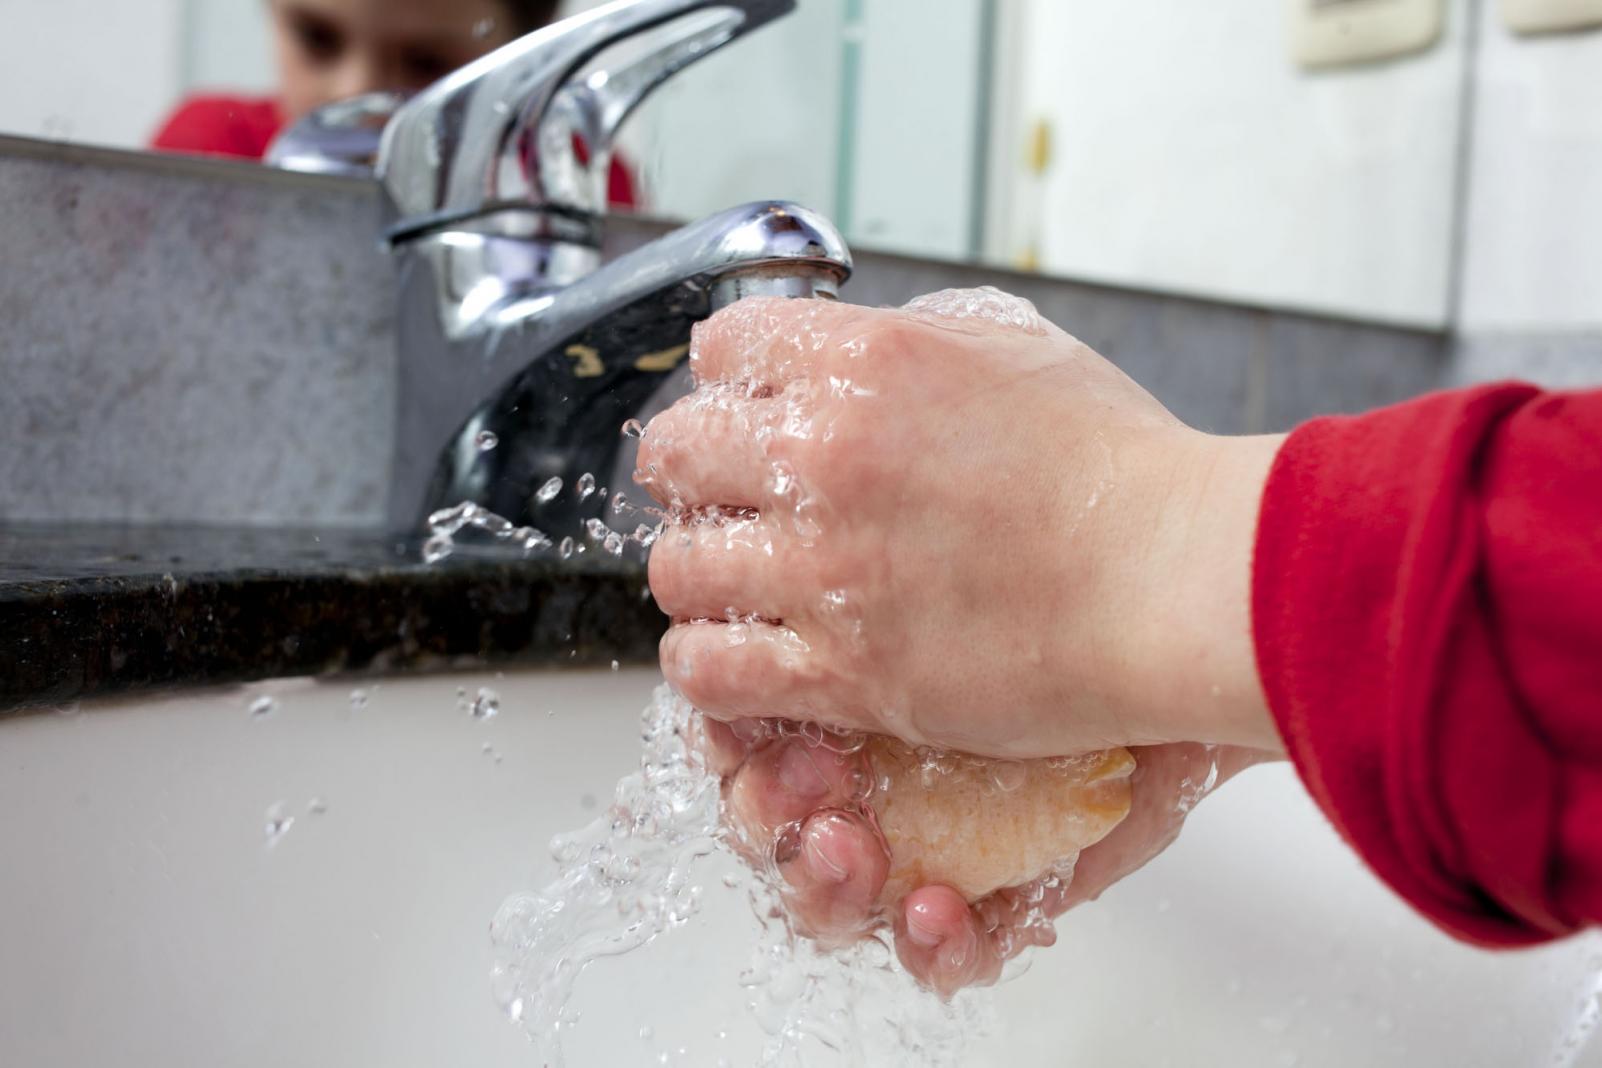 Consejos para limpiar el baño y prevenir el coronavirus